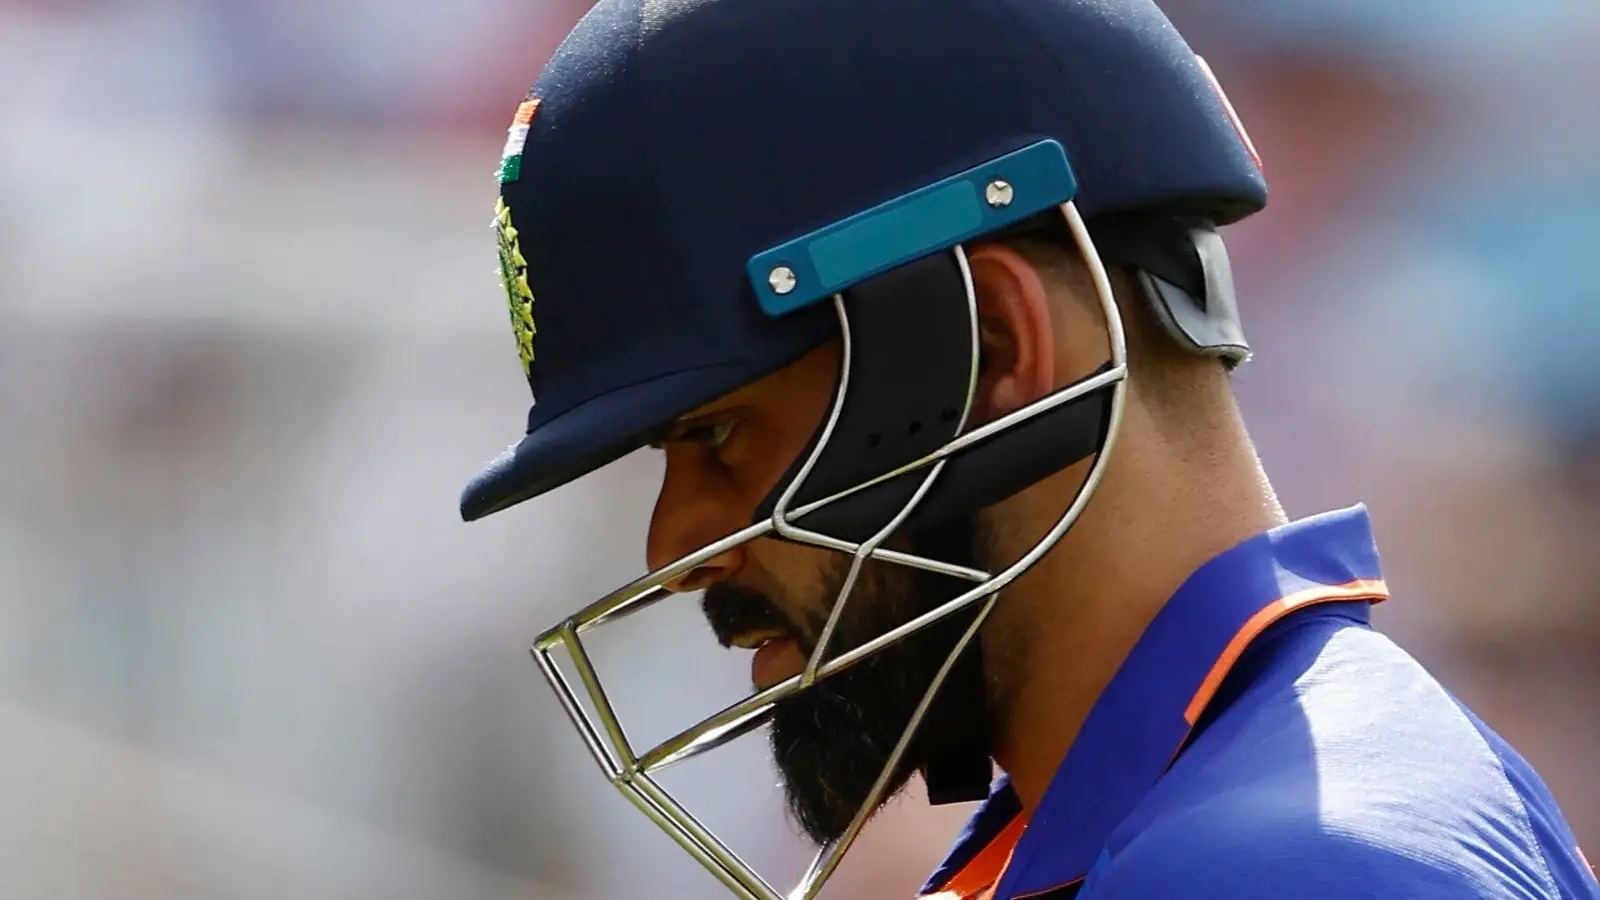  मैनचेस्टर वनडे में इंग्लैंड के खिलाफ 22 गेंदों में 17 रनों के बाद विराट कोहली ने नया निचला स्तर मारा |  क्रिकेट
